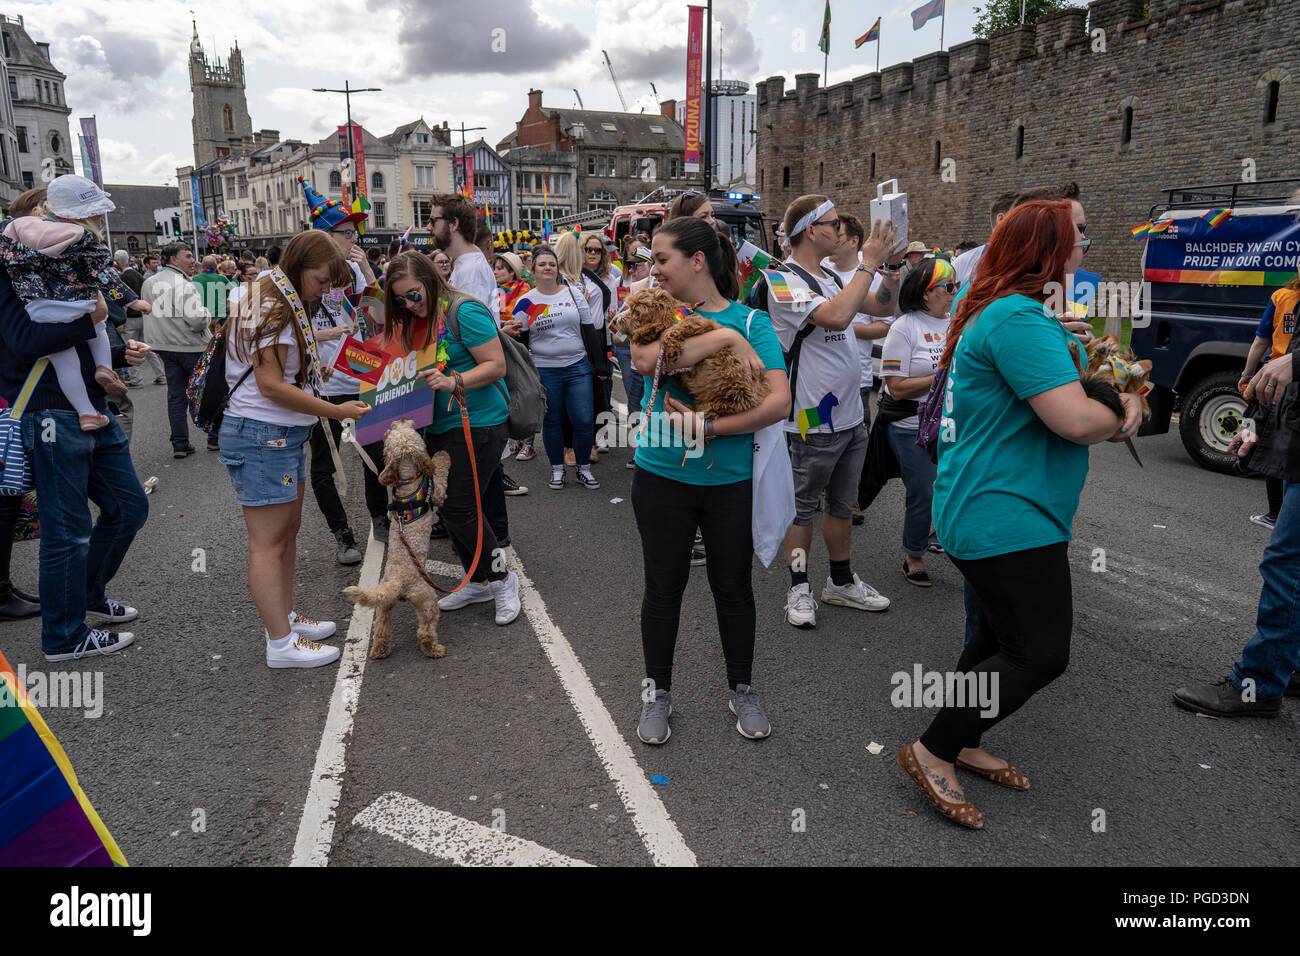 Cardiff, Pays de Galles, le 25 août 2018 marcheurs : participer à l'assemblée annuelle Pride Parade Cymru à Cardiff au Pays de Galles le 25 août 2018 Crédit : Daniel Damaschin/Alamy Live News Banque D'Images